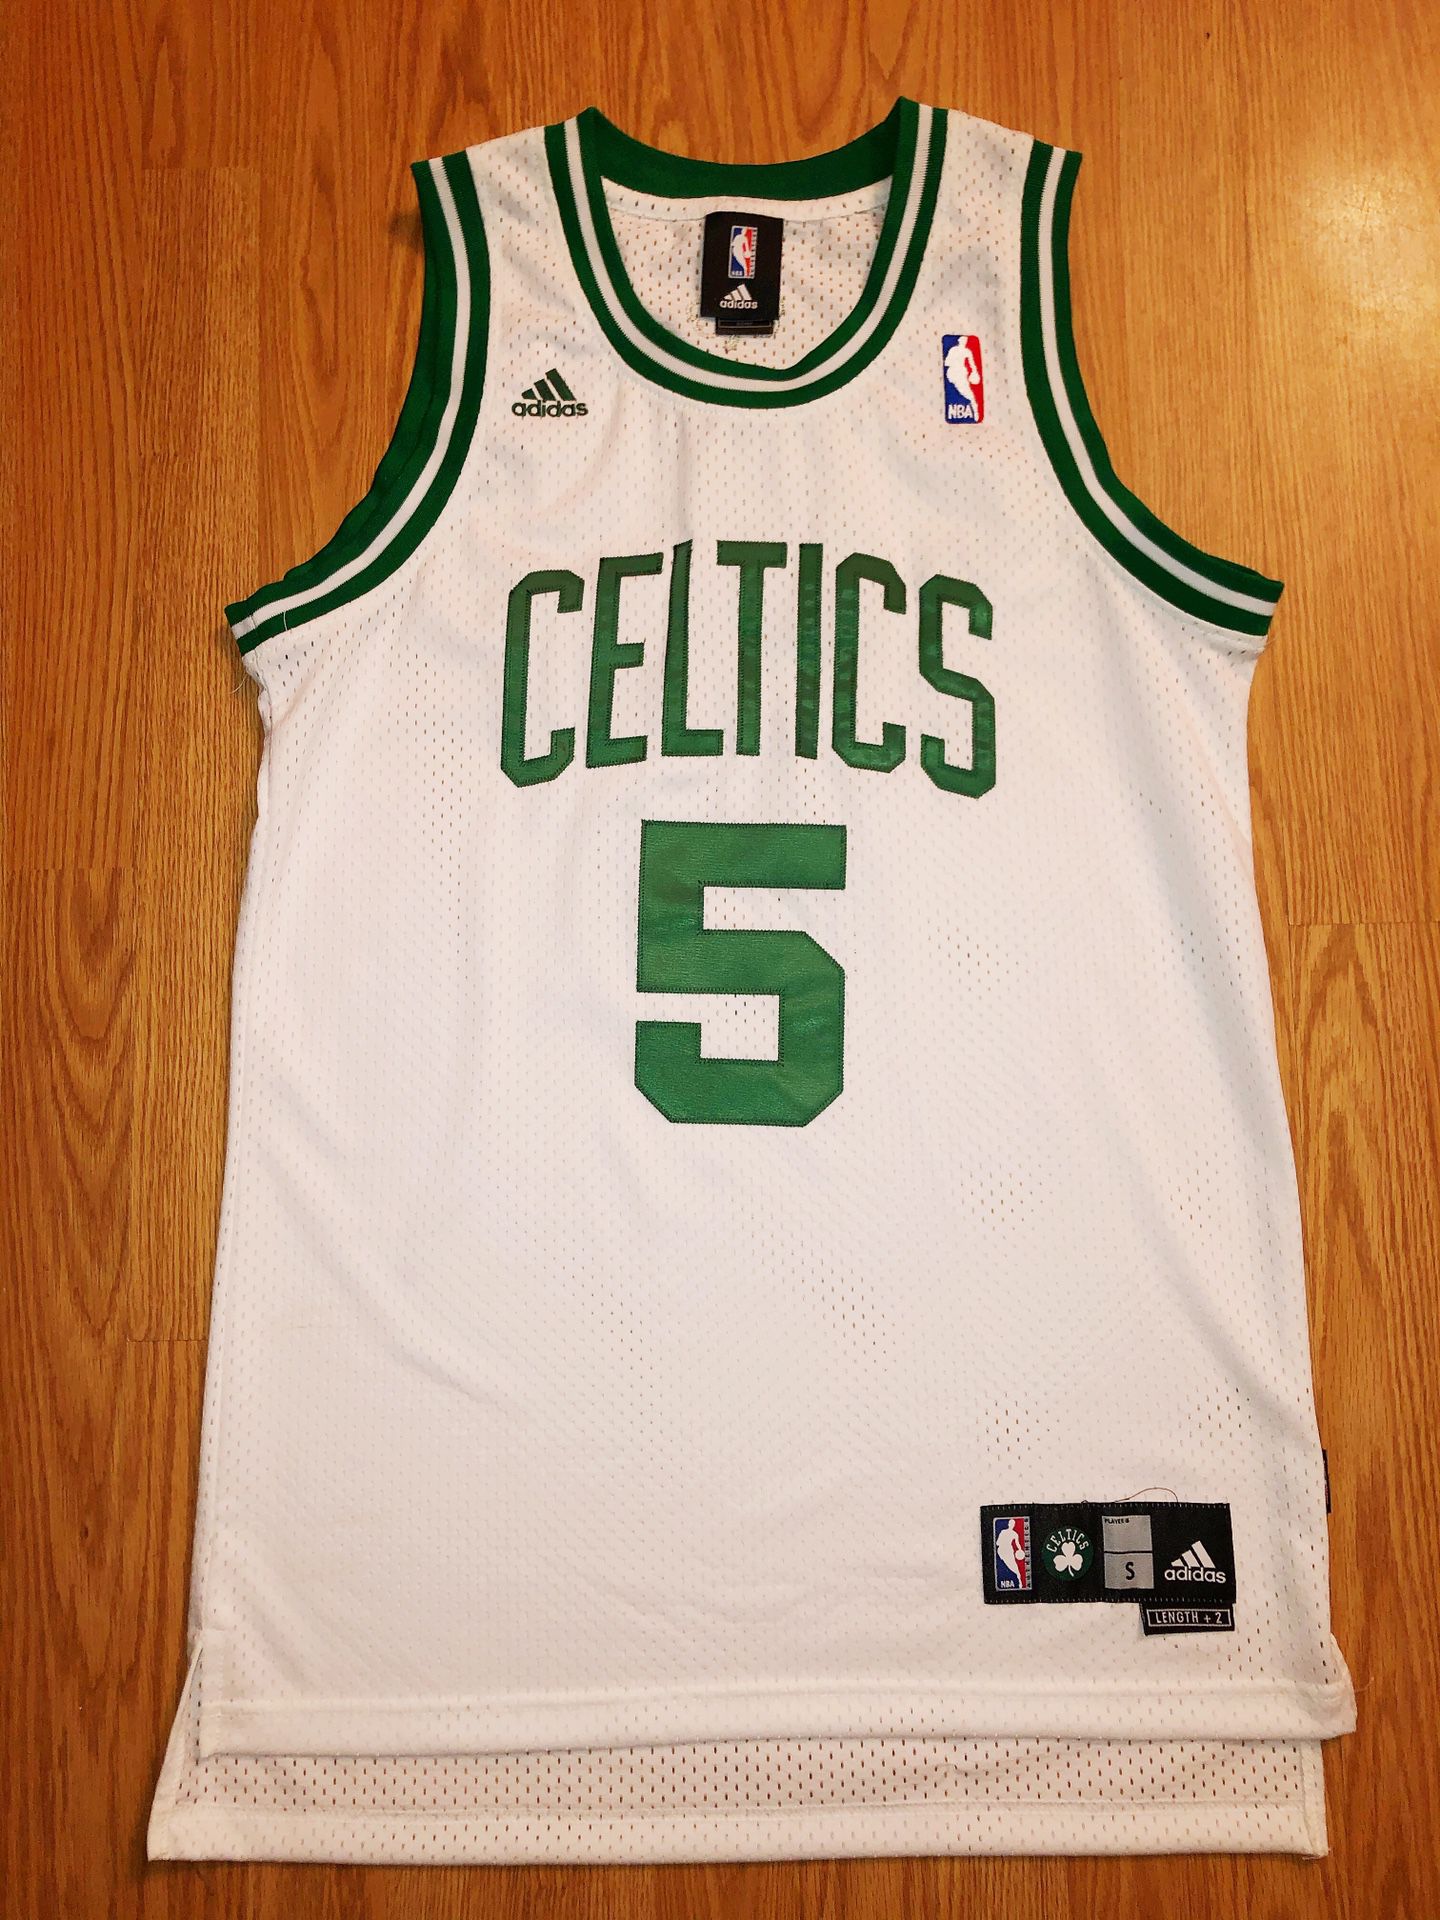 Men’s Small - Kevin Garnett Boston Celtics Jersey